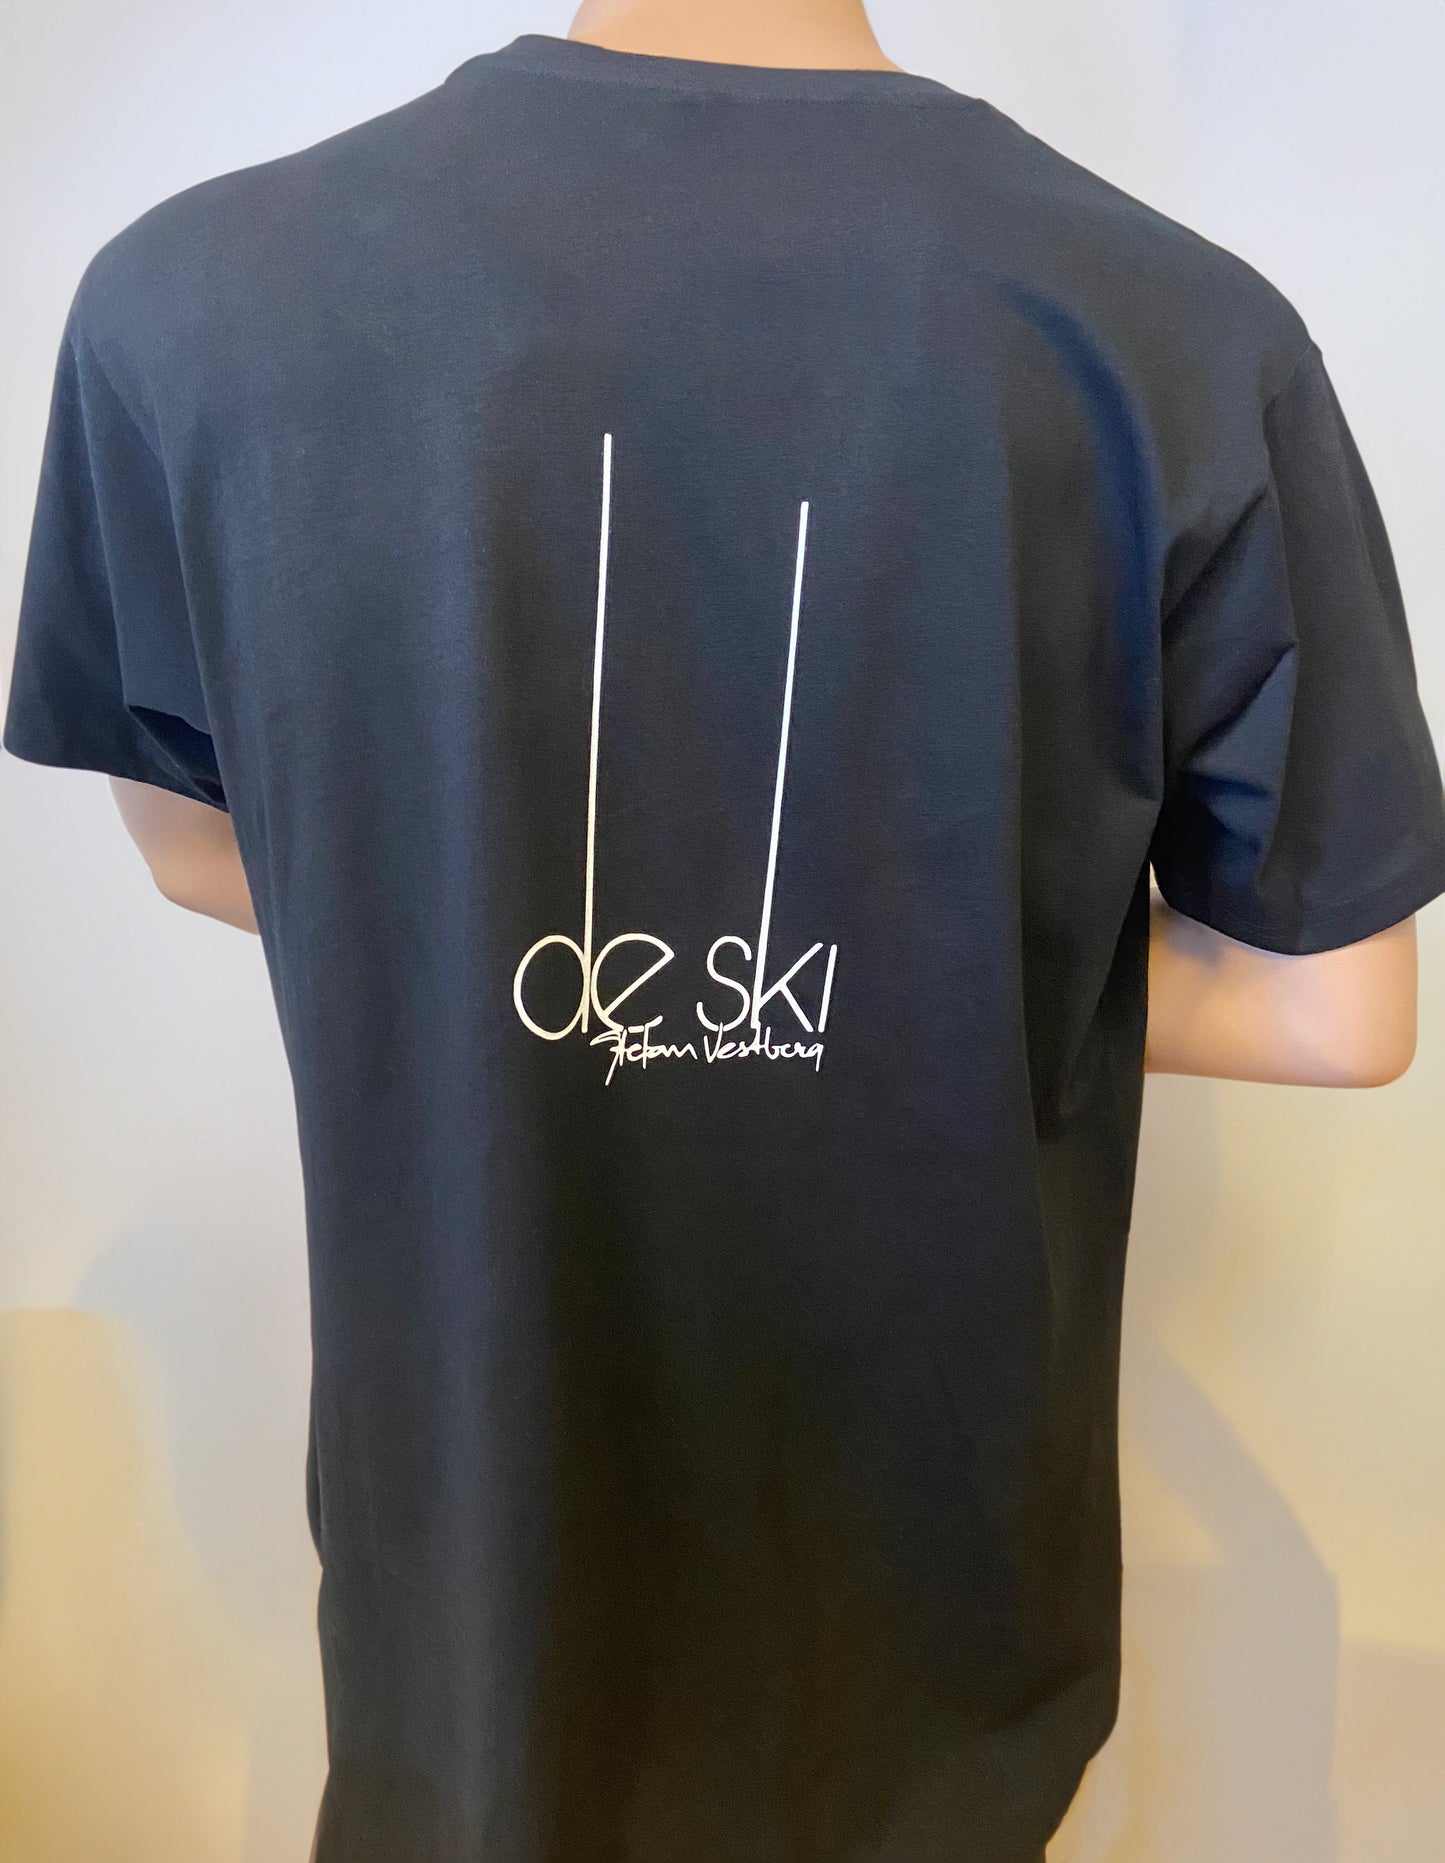 De Ski in the Future - T-Shirt